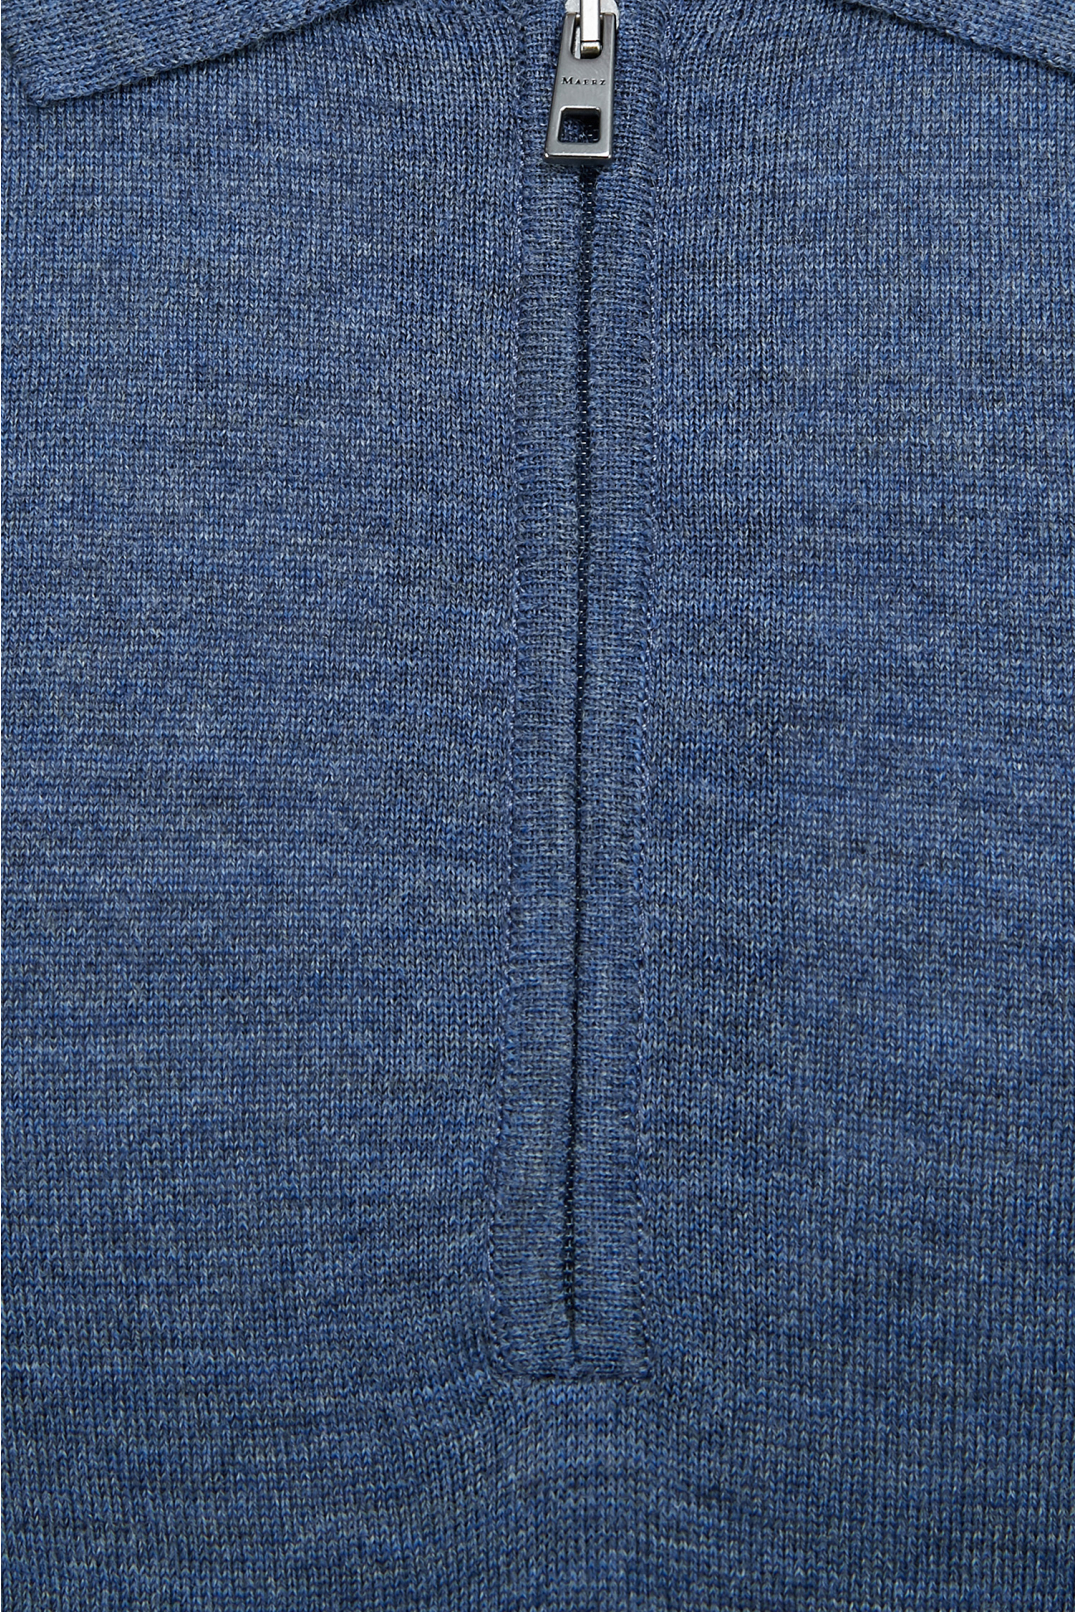 Мужской синий шерстяной джемпер с коротким рукавом - 3